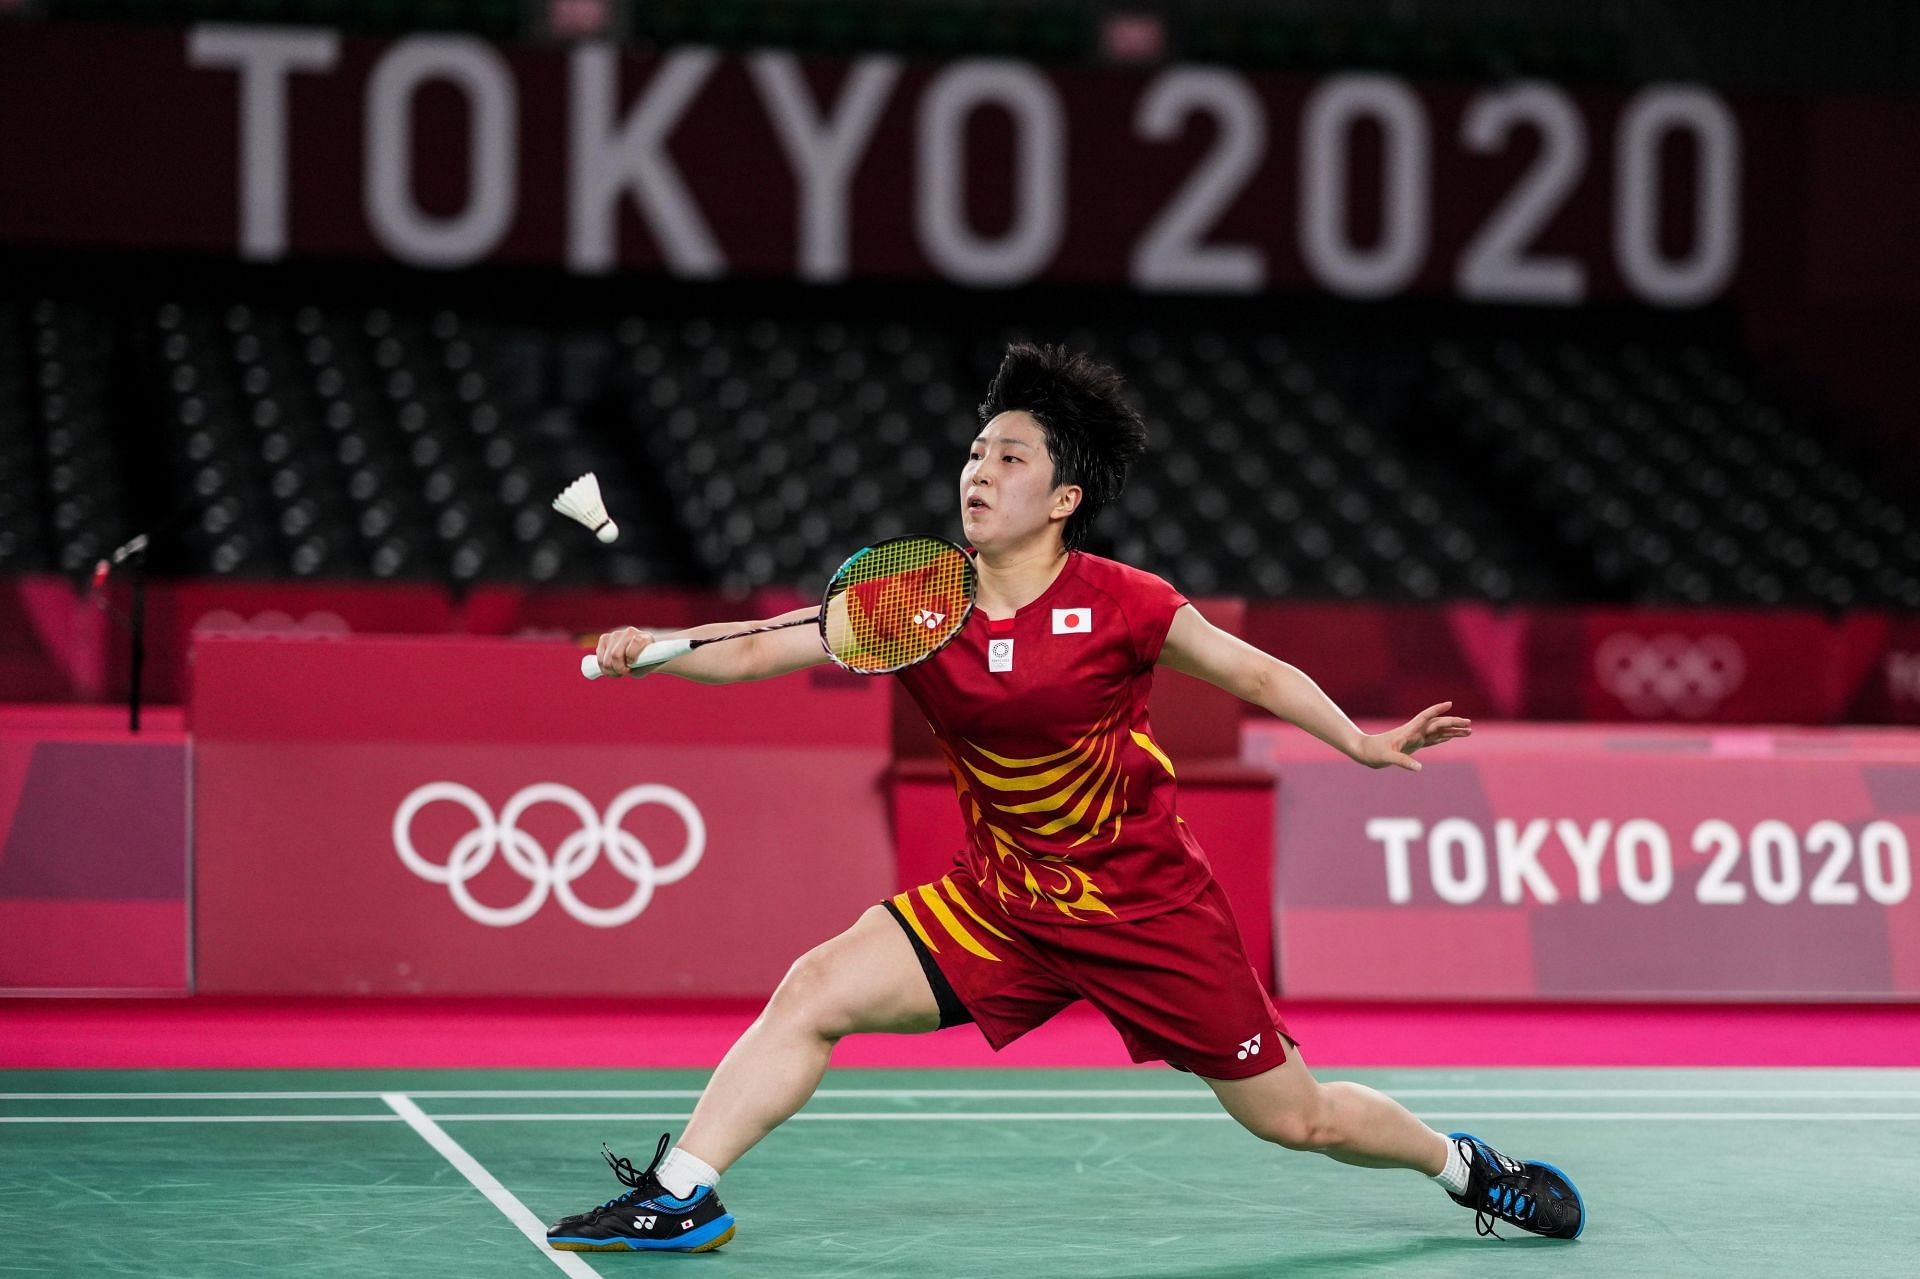 Akane Yamaguchi won back-to-back World Championship women